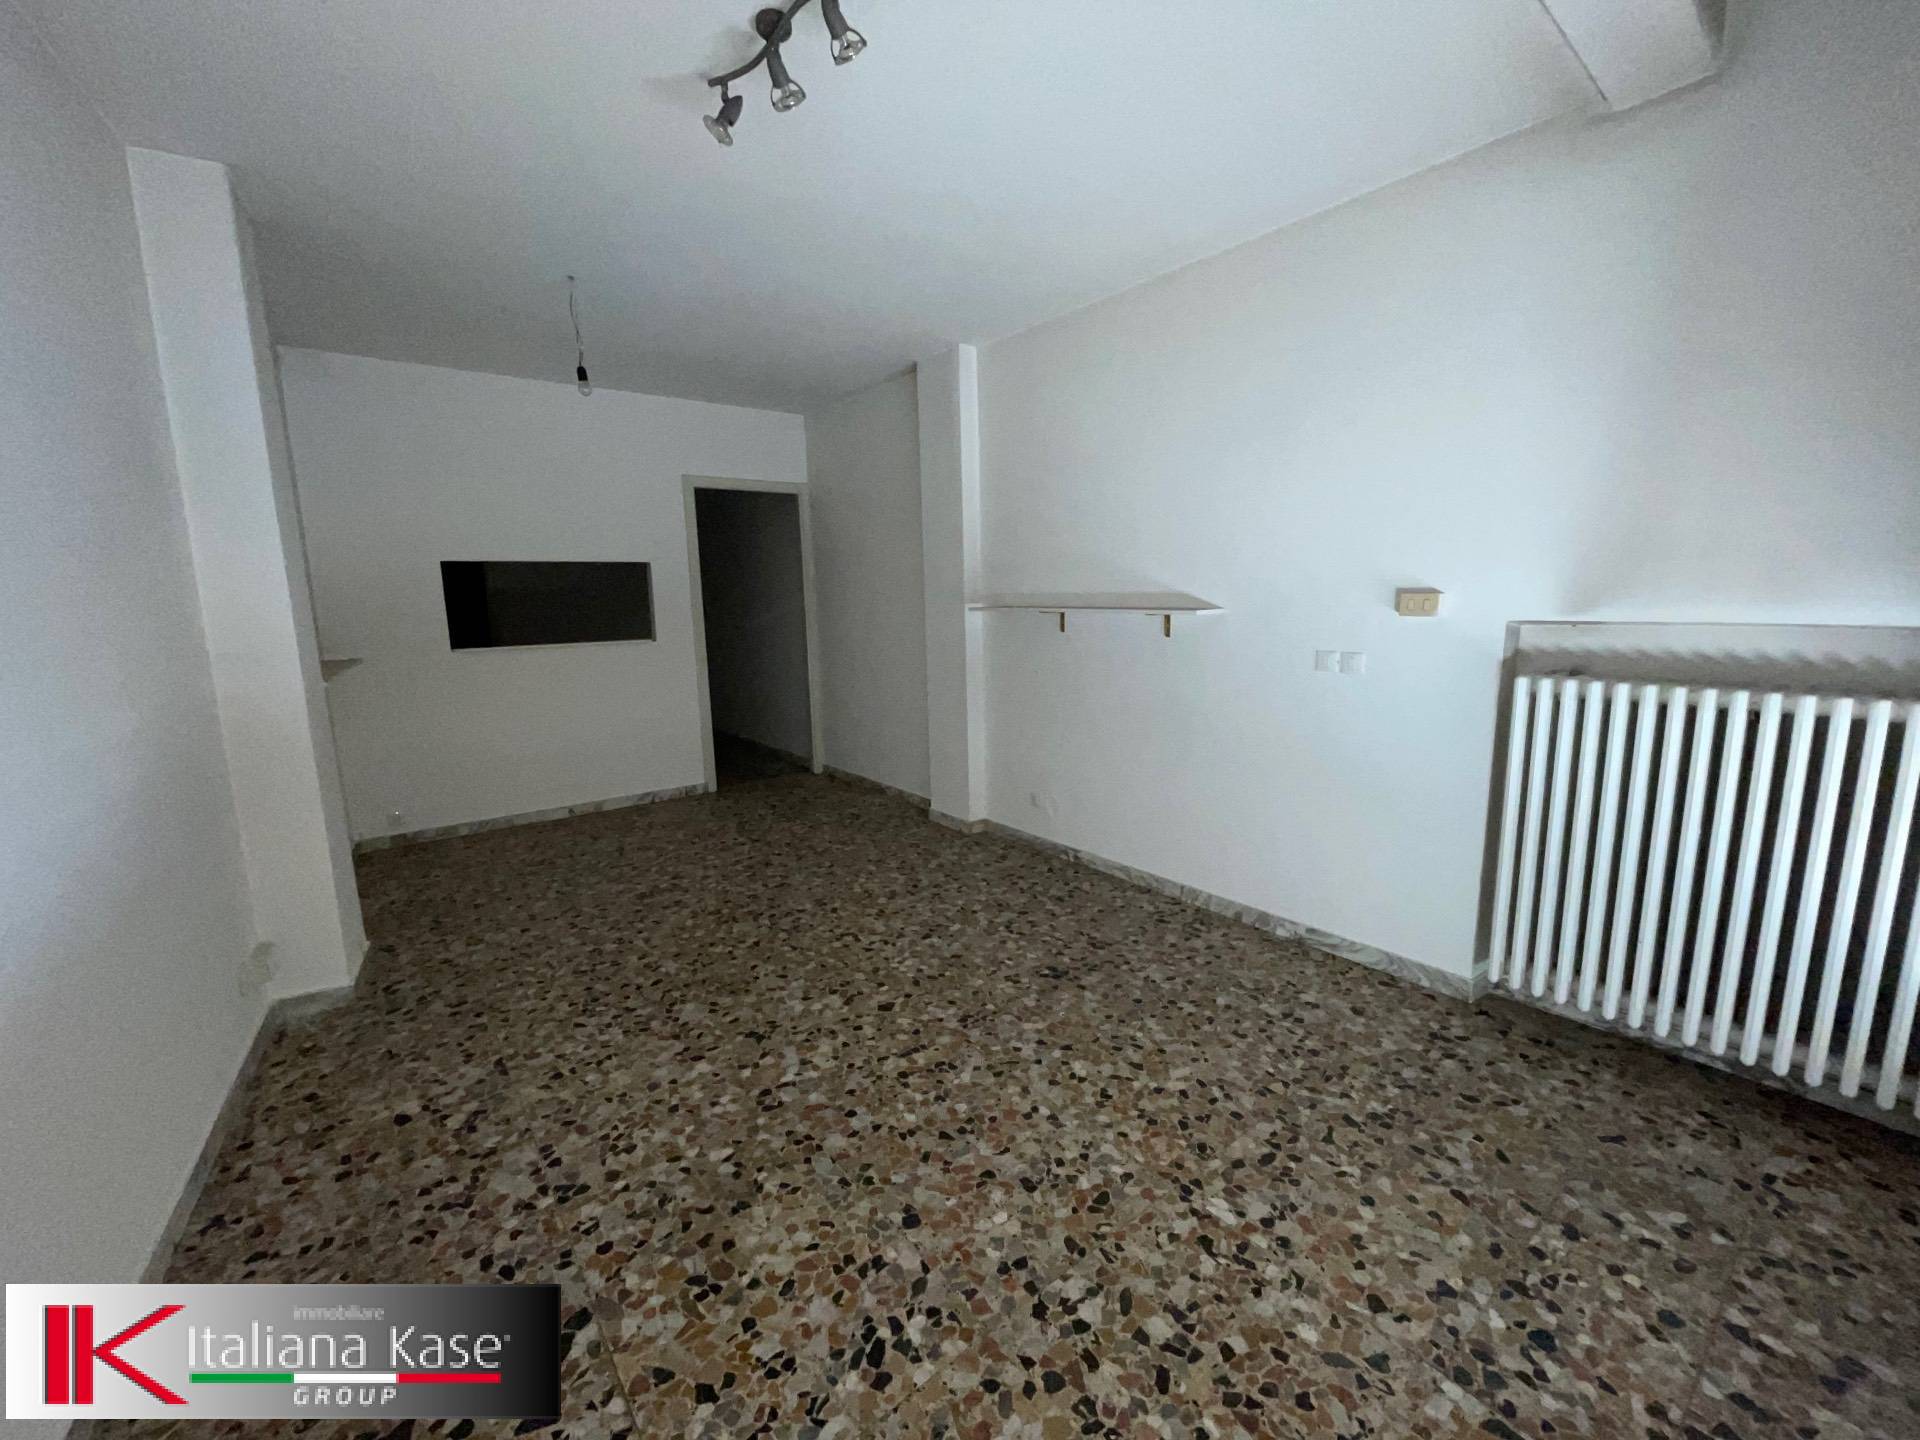 Negozio / Locale in affitto a Gassino Torinese, 9999 locali, prezzo € 400 | CambioCasa.it